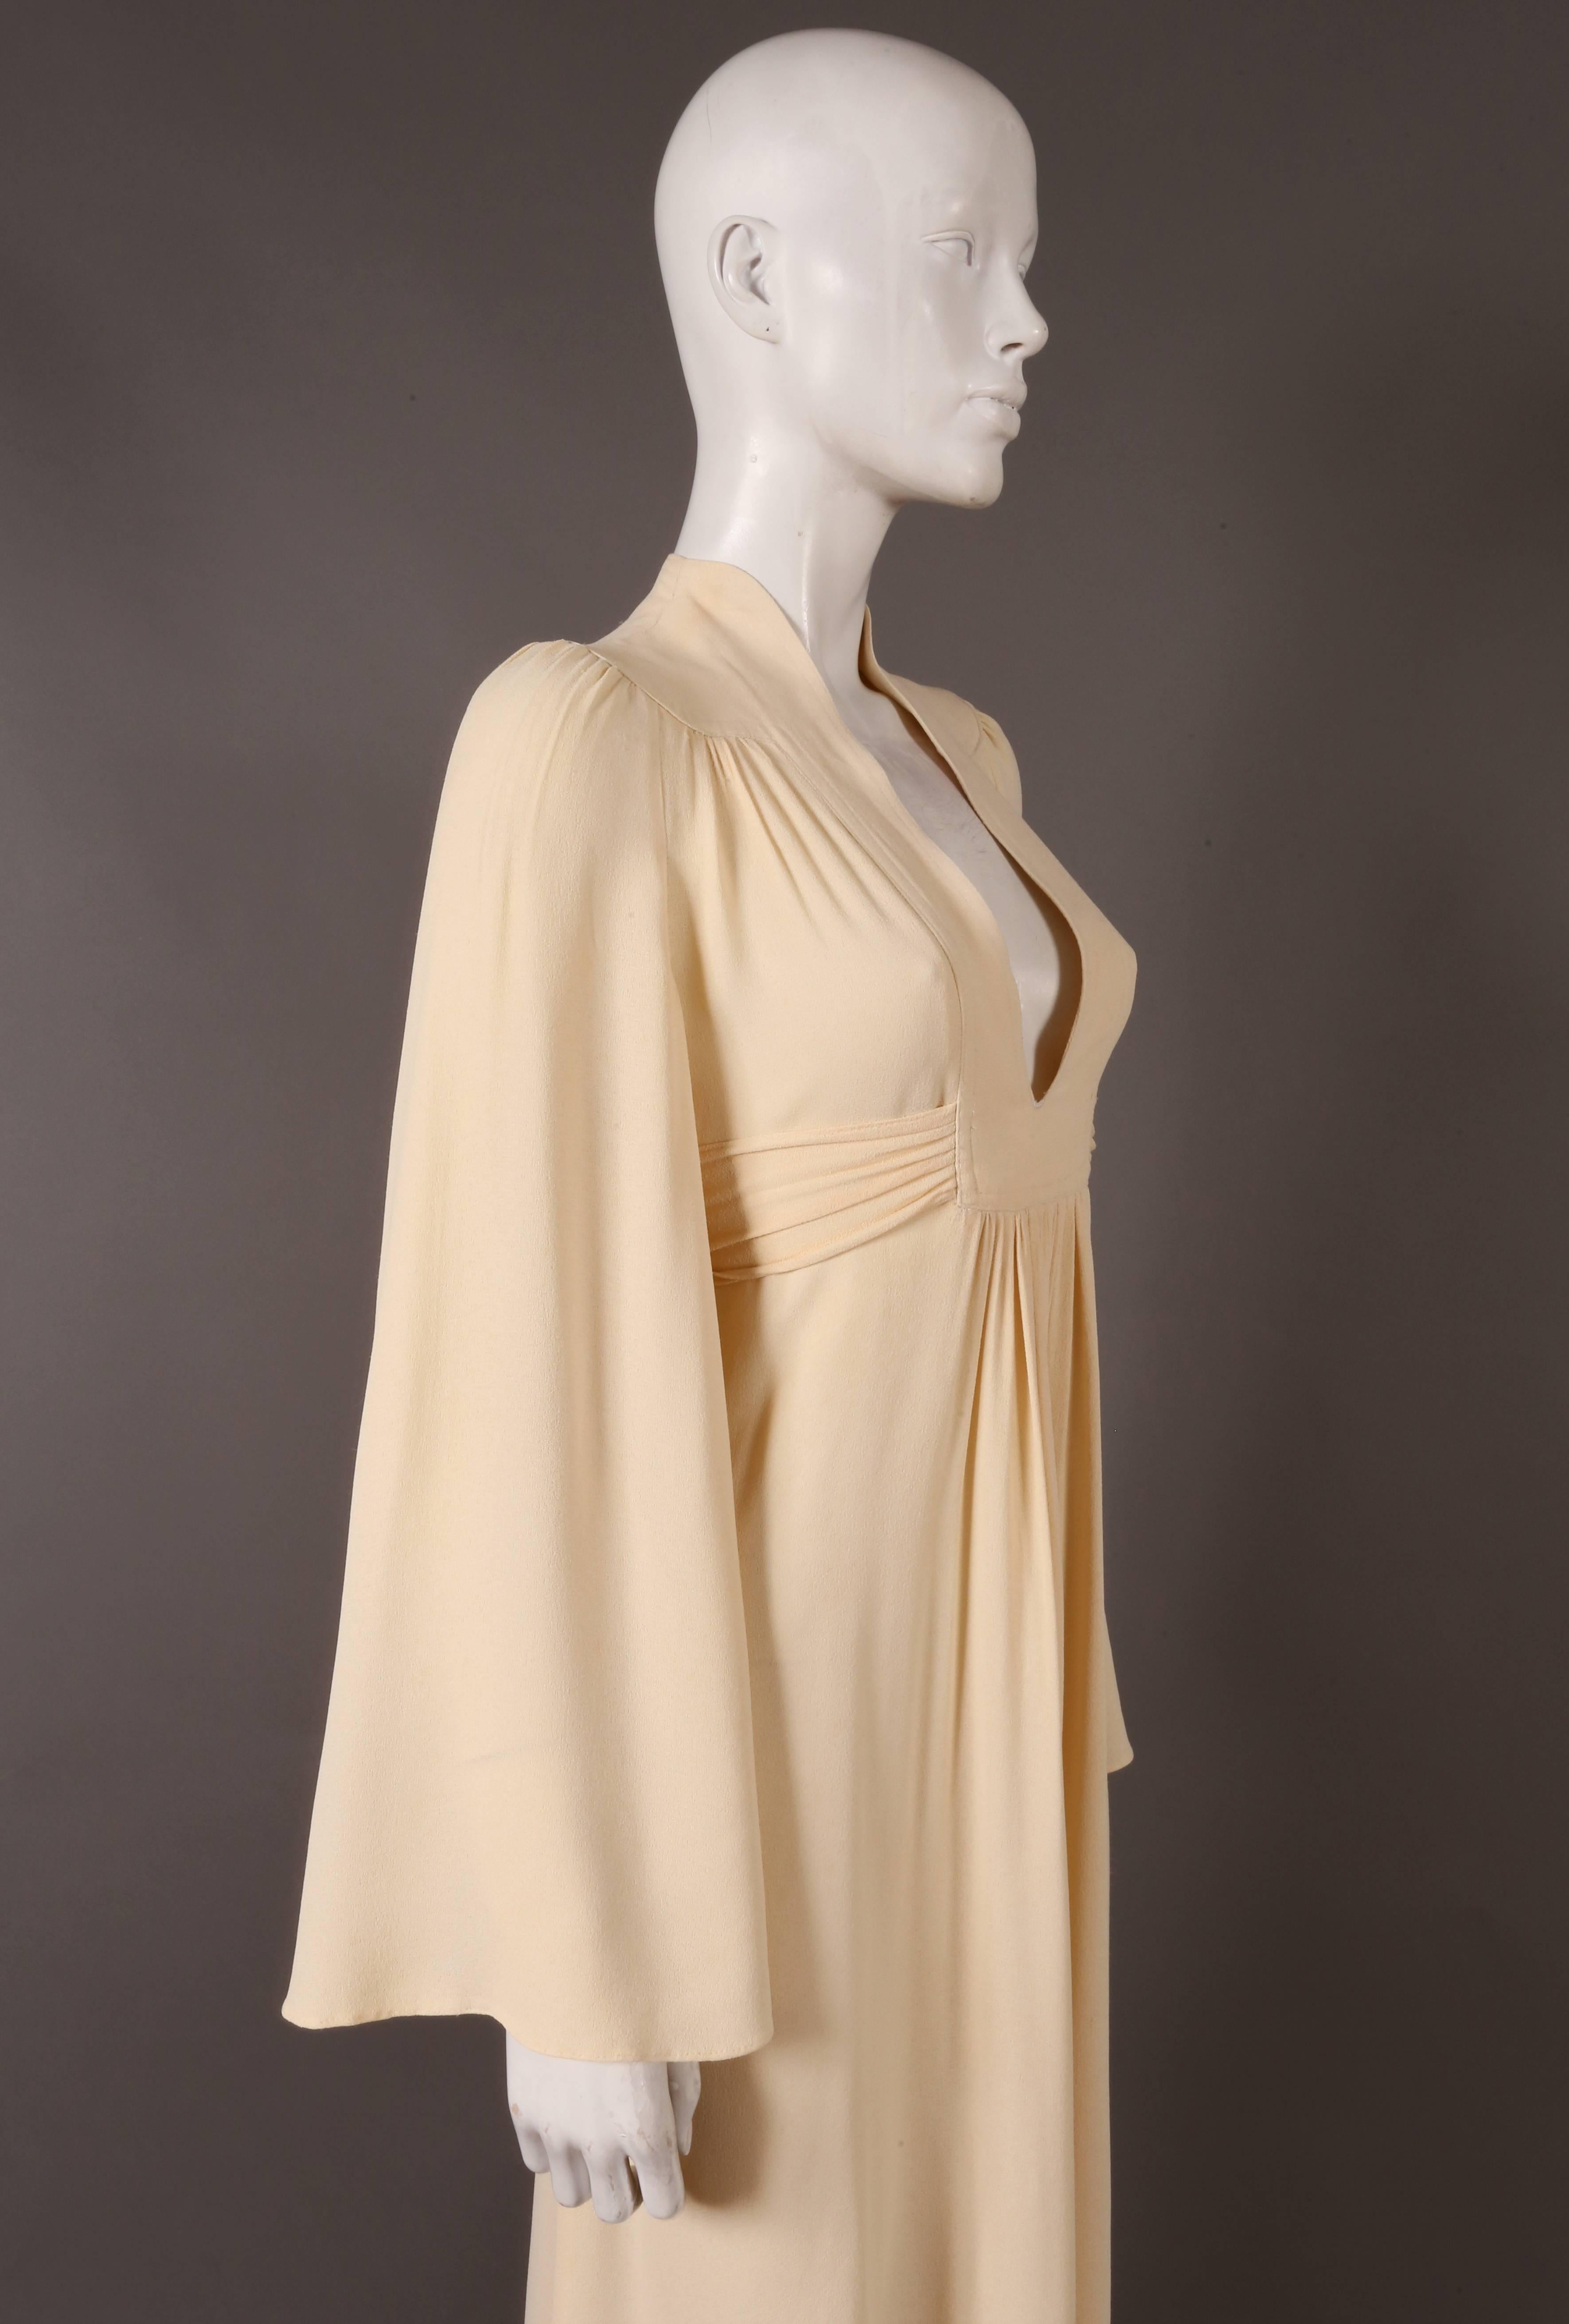 Women's Ossie Clark for Radley cream moss crepe gown, c. 1970s